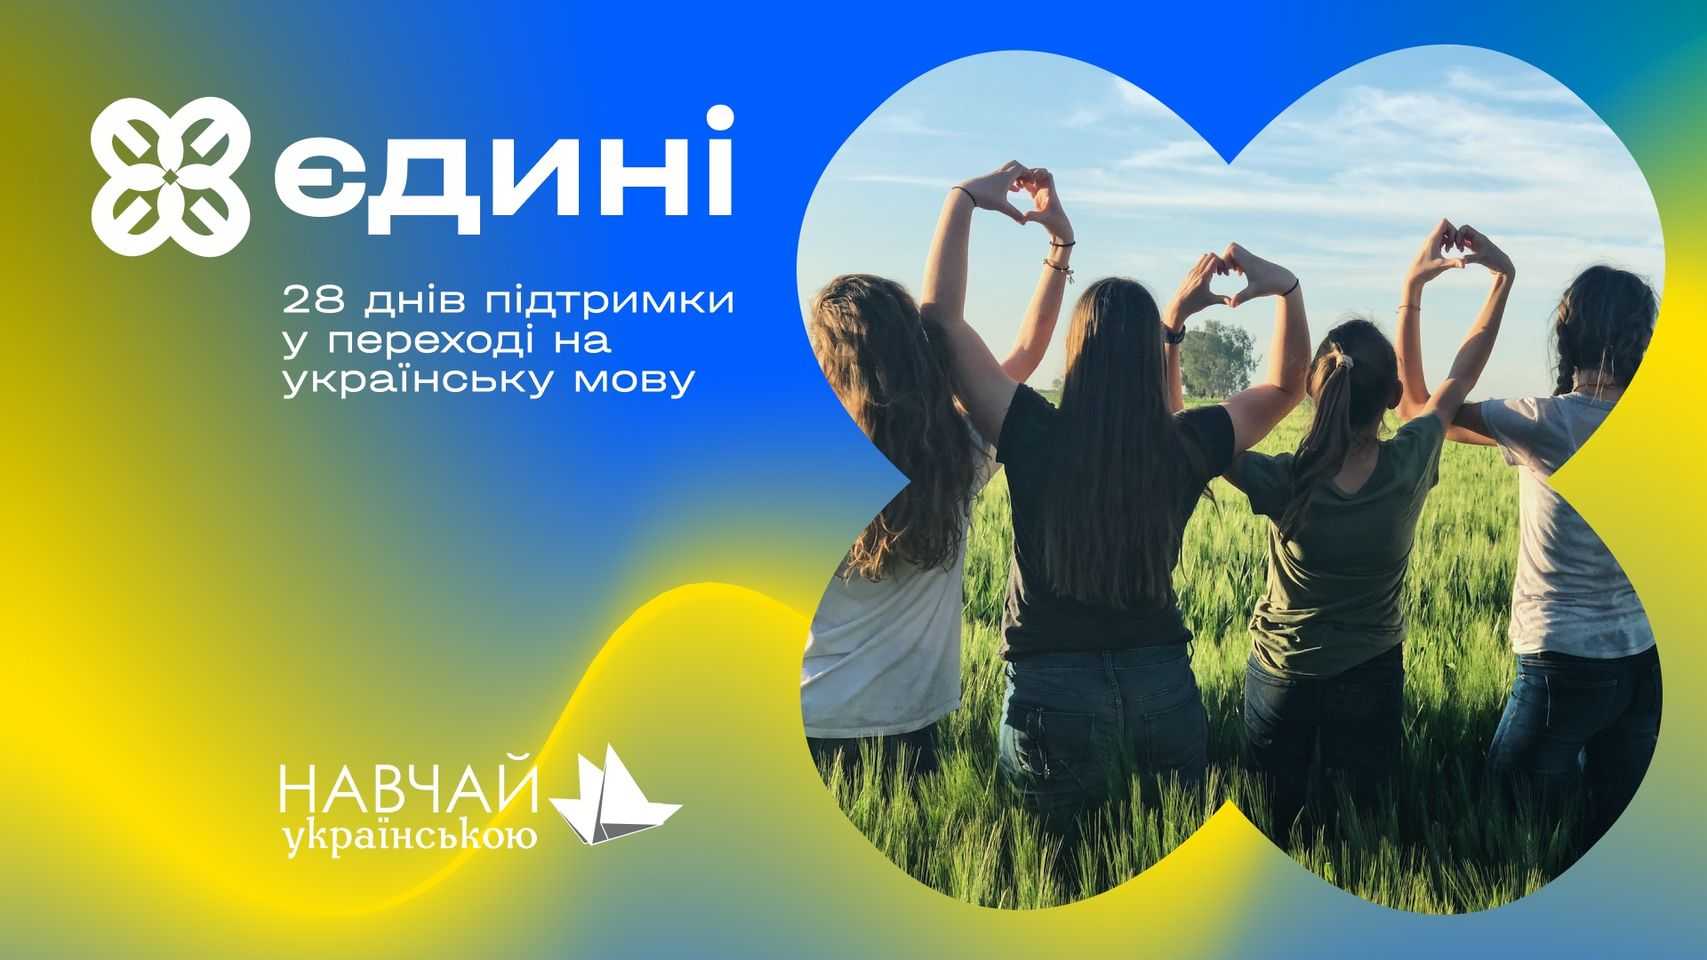 Тепер українська мова ще доступніша! Western NIS Enterprise Fund підтримав проєкт «Єдині»